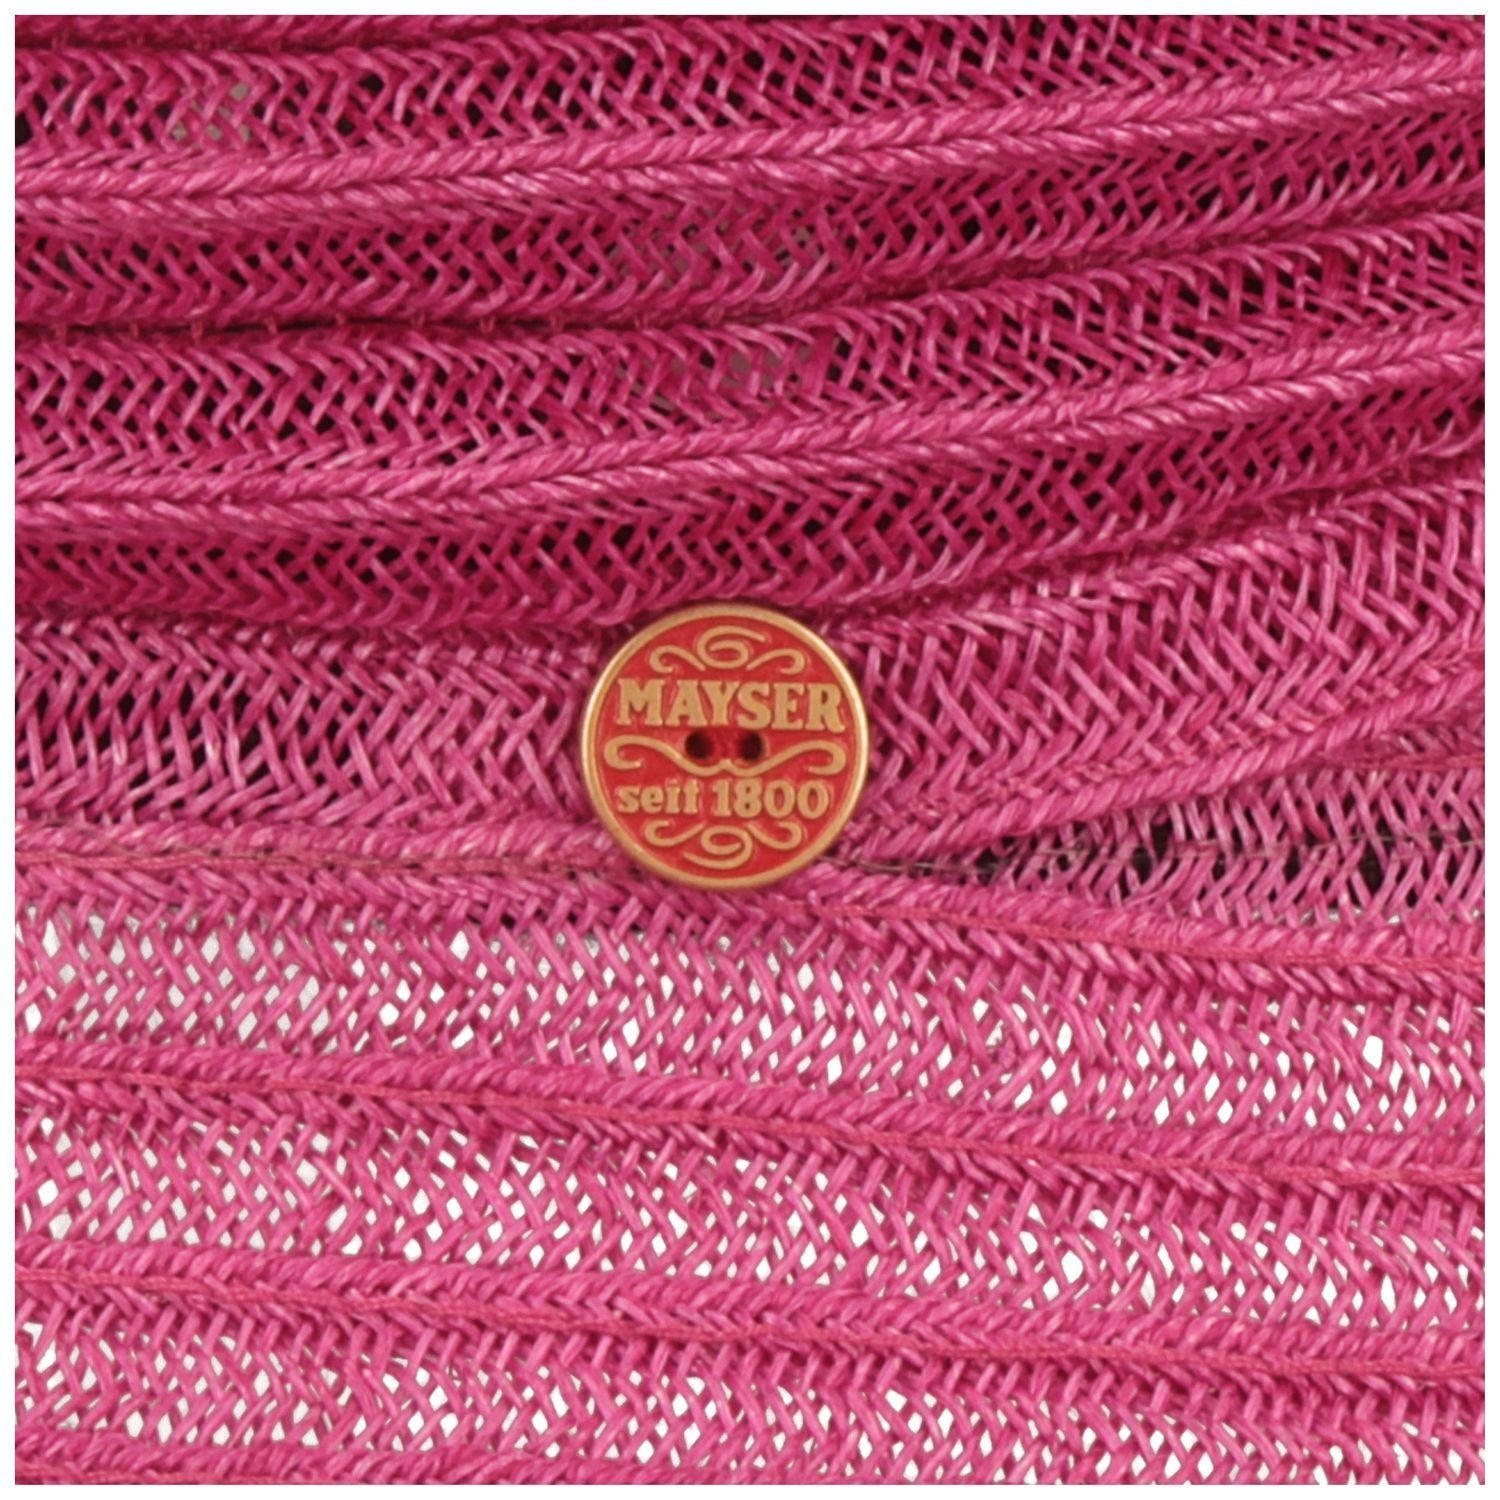 Bortenhut faltbarer 9010 Bella pink Hanf Mayser knautschbarer Strohhut aus &